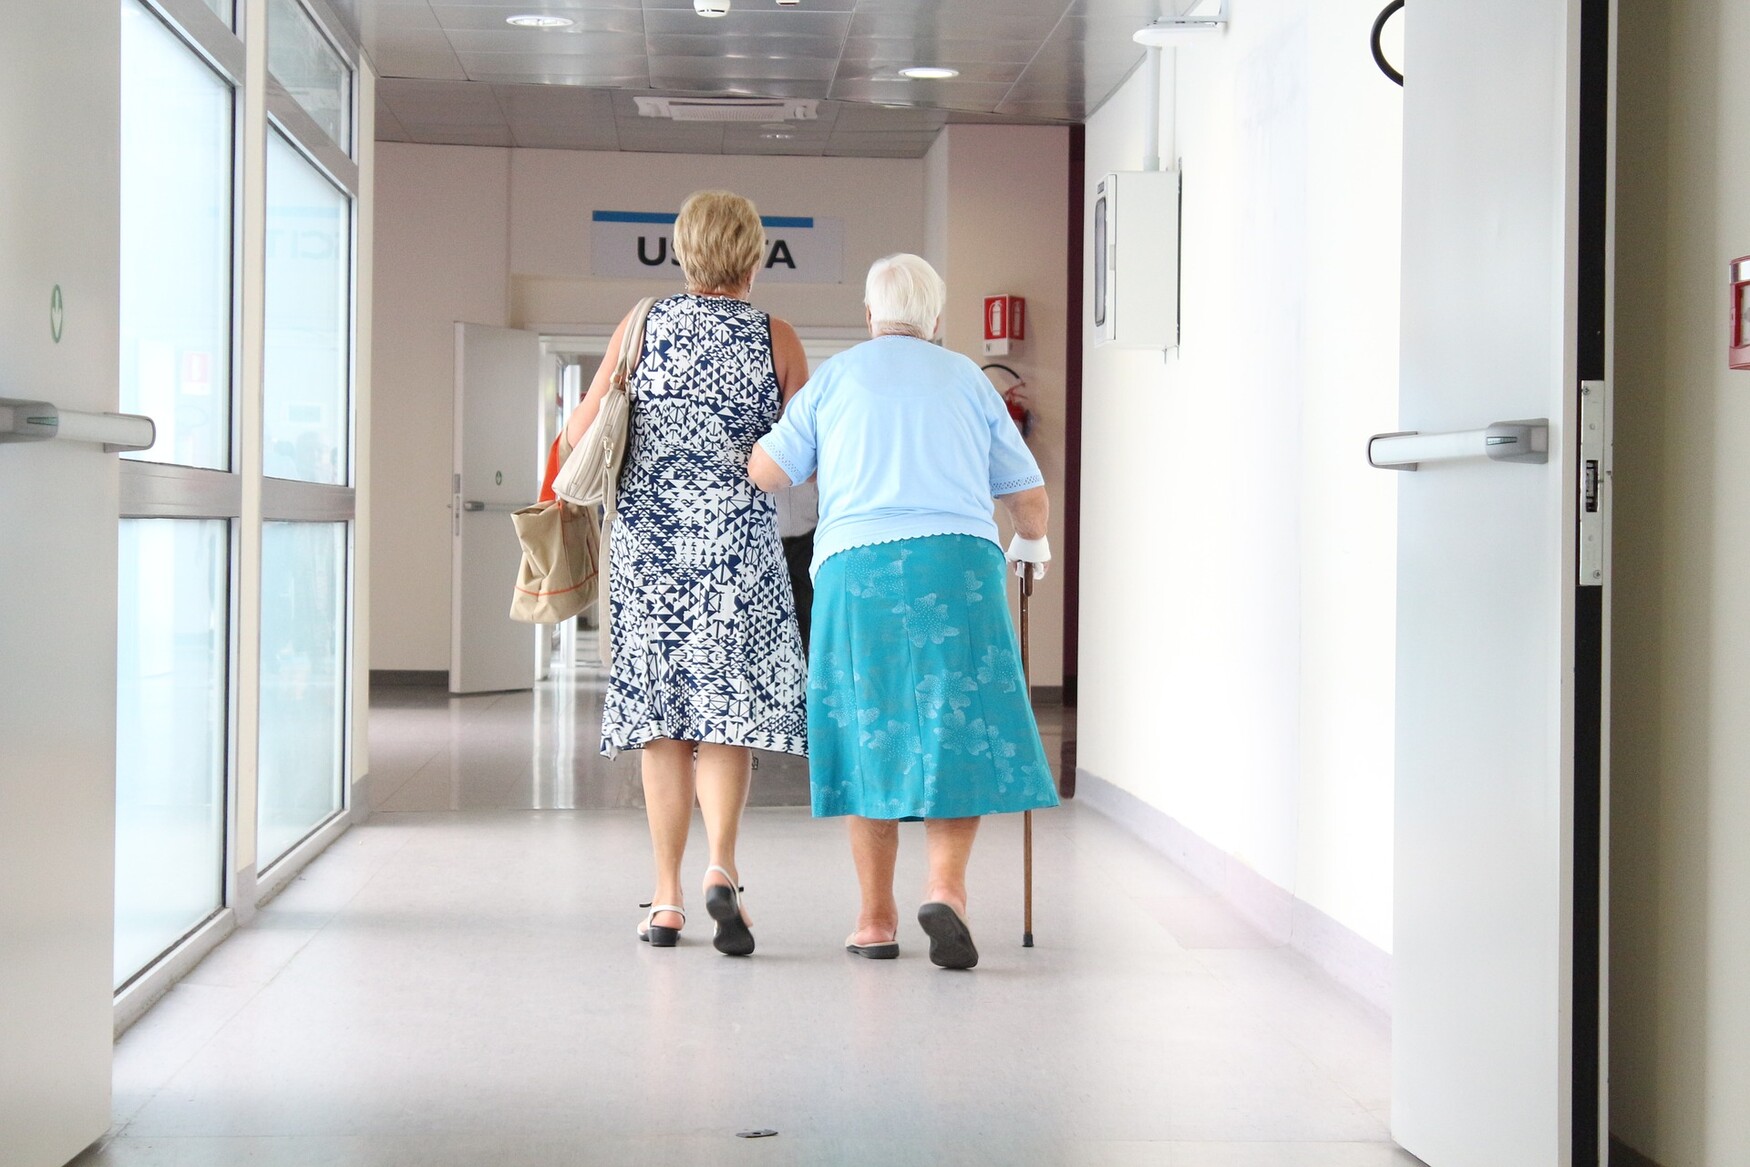 Elderly patient walking in hospital